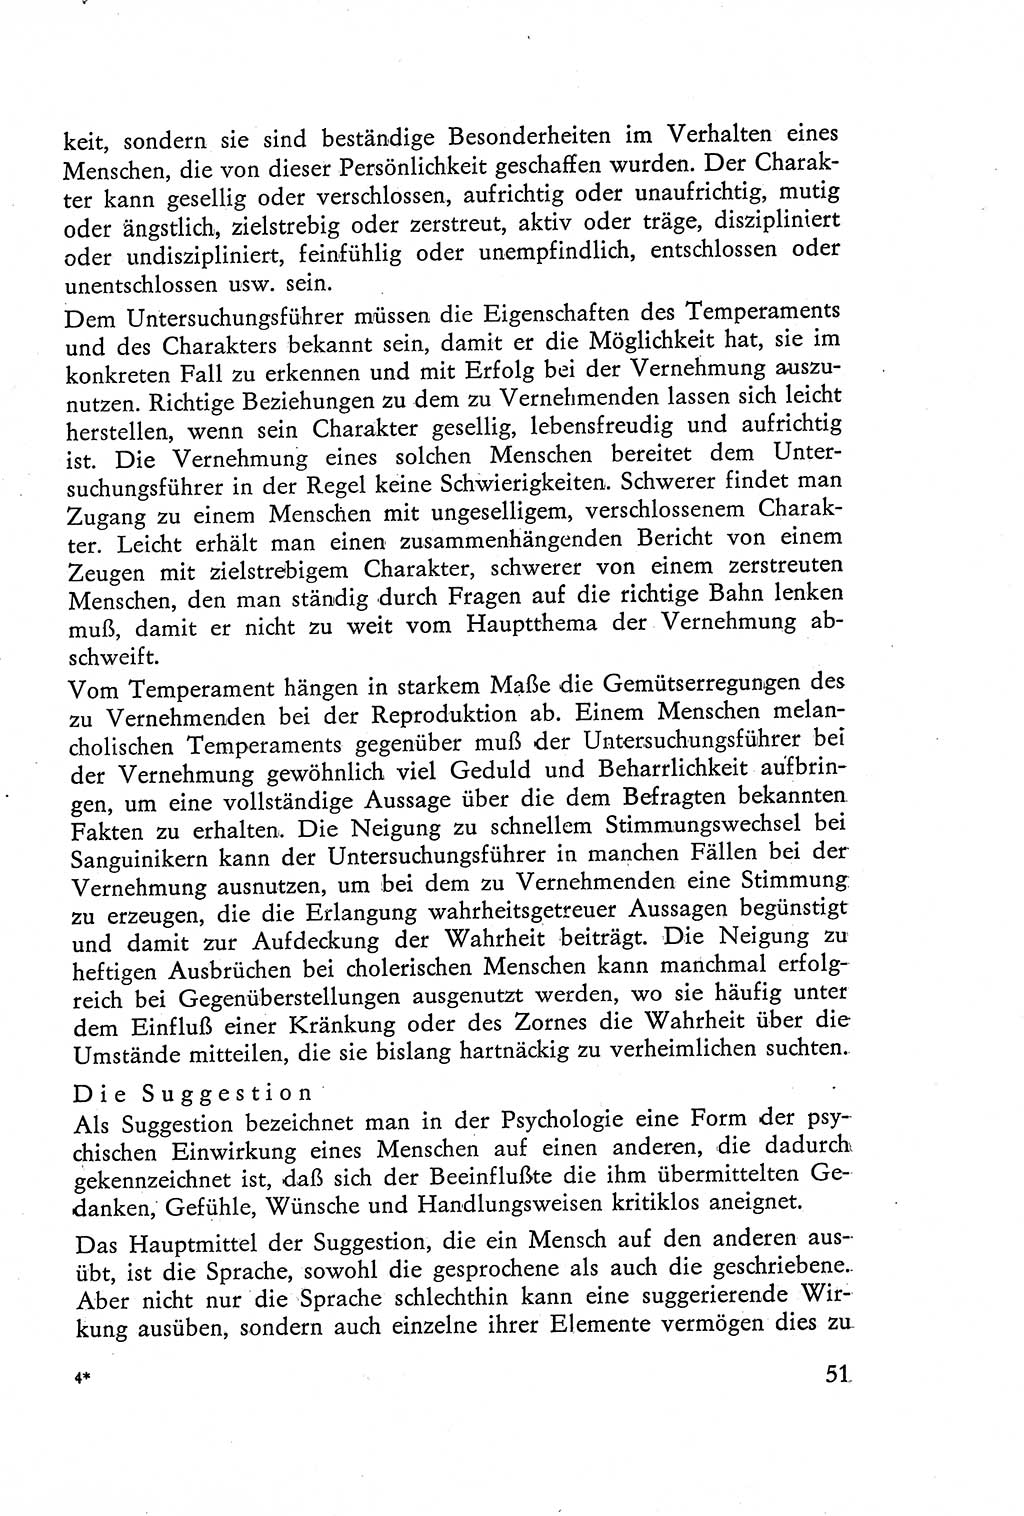 Die Vernehmung [Deutsche Demokratische Republik (DDR)] 1960, Seite 51 (Vern. DDR 1960, S. 51)